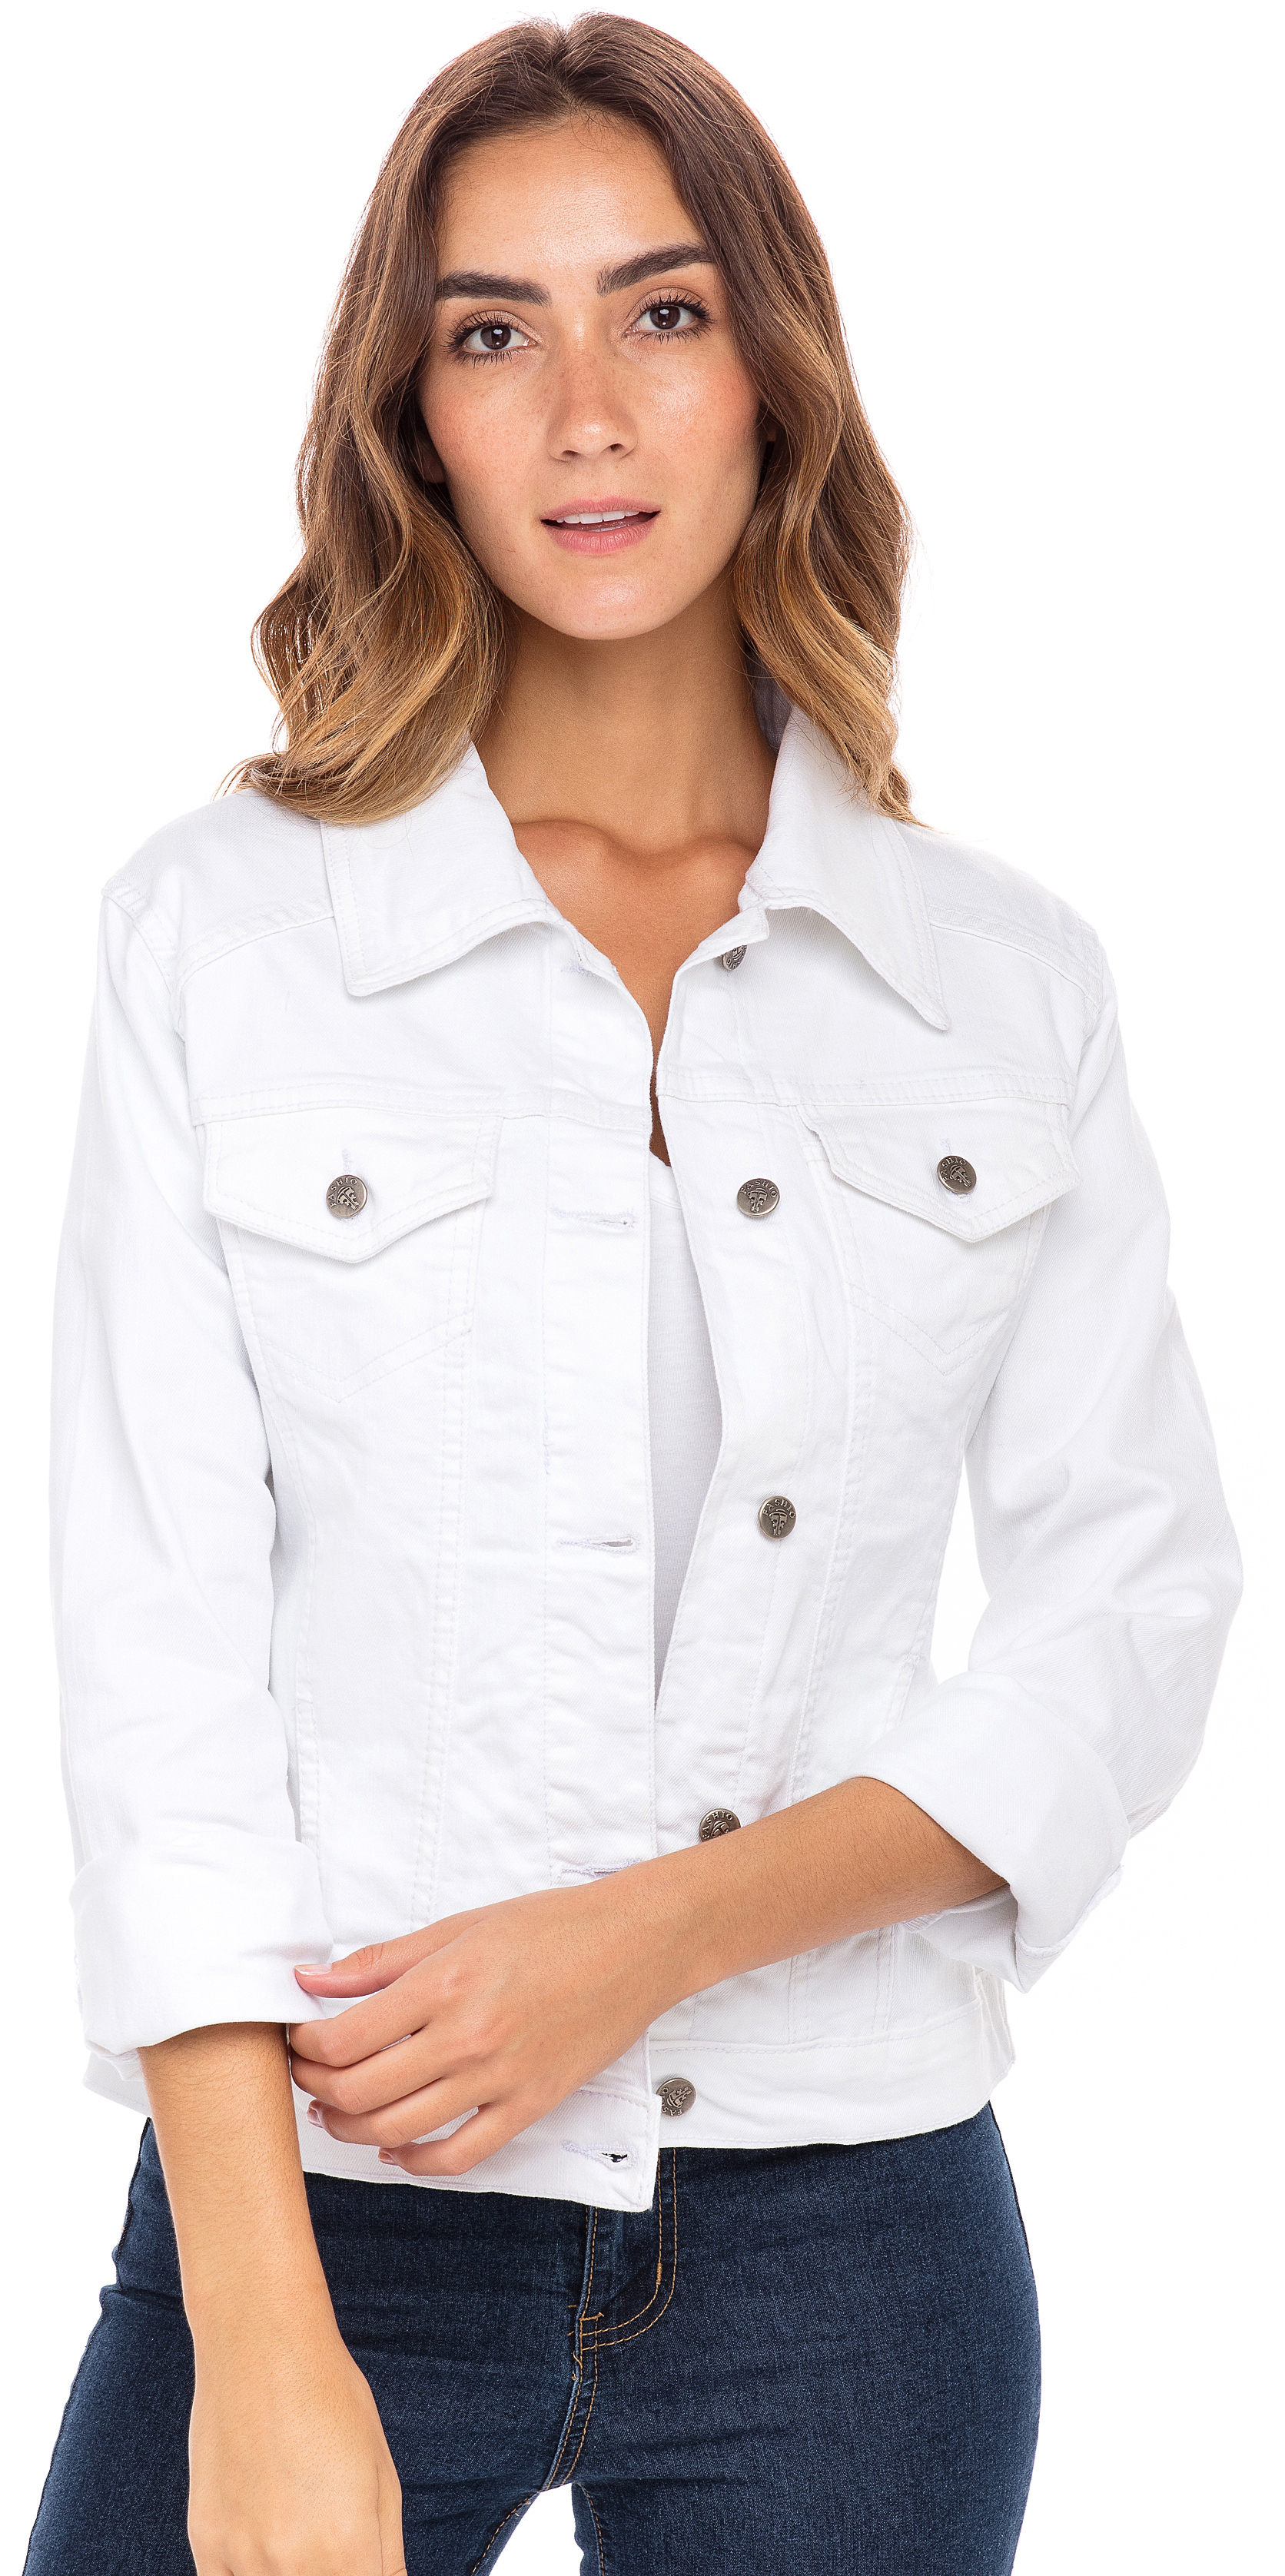 SKYLINEWEARS Women Denim Jacket Button UP Long Sleeve Ladies Stretch Trucker Jean Jackets - image 1 of 5